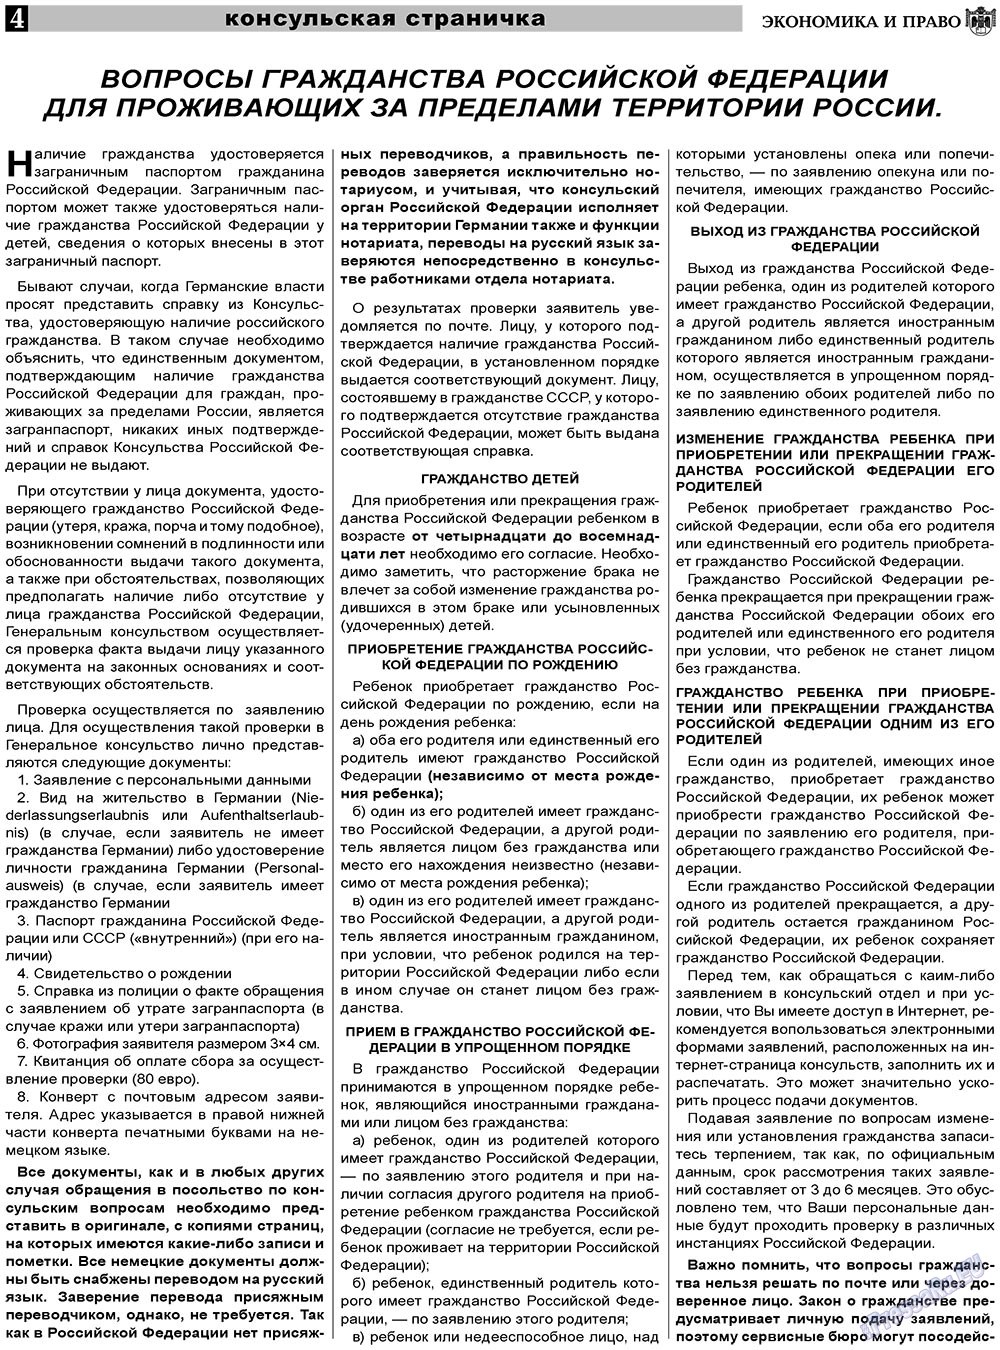 Экономика и право, газета. 2011 №6 стр.4